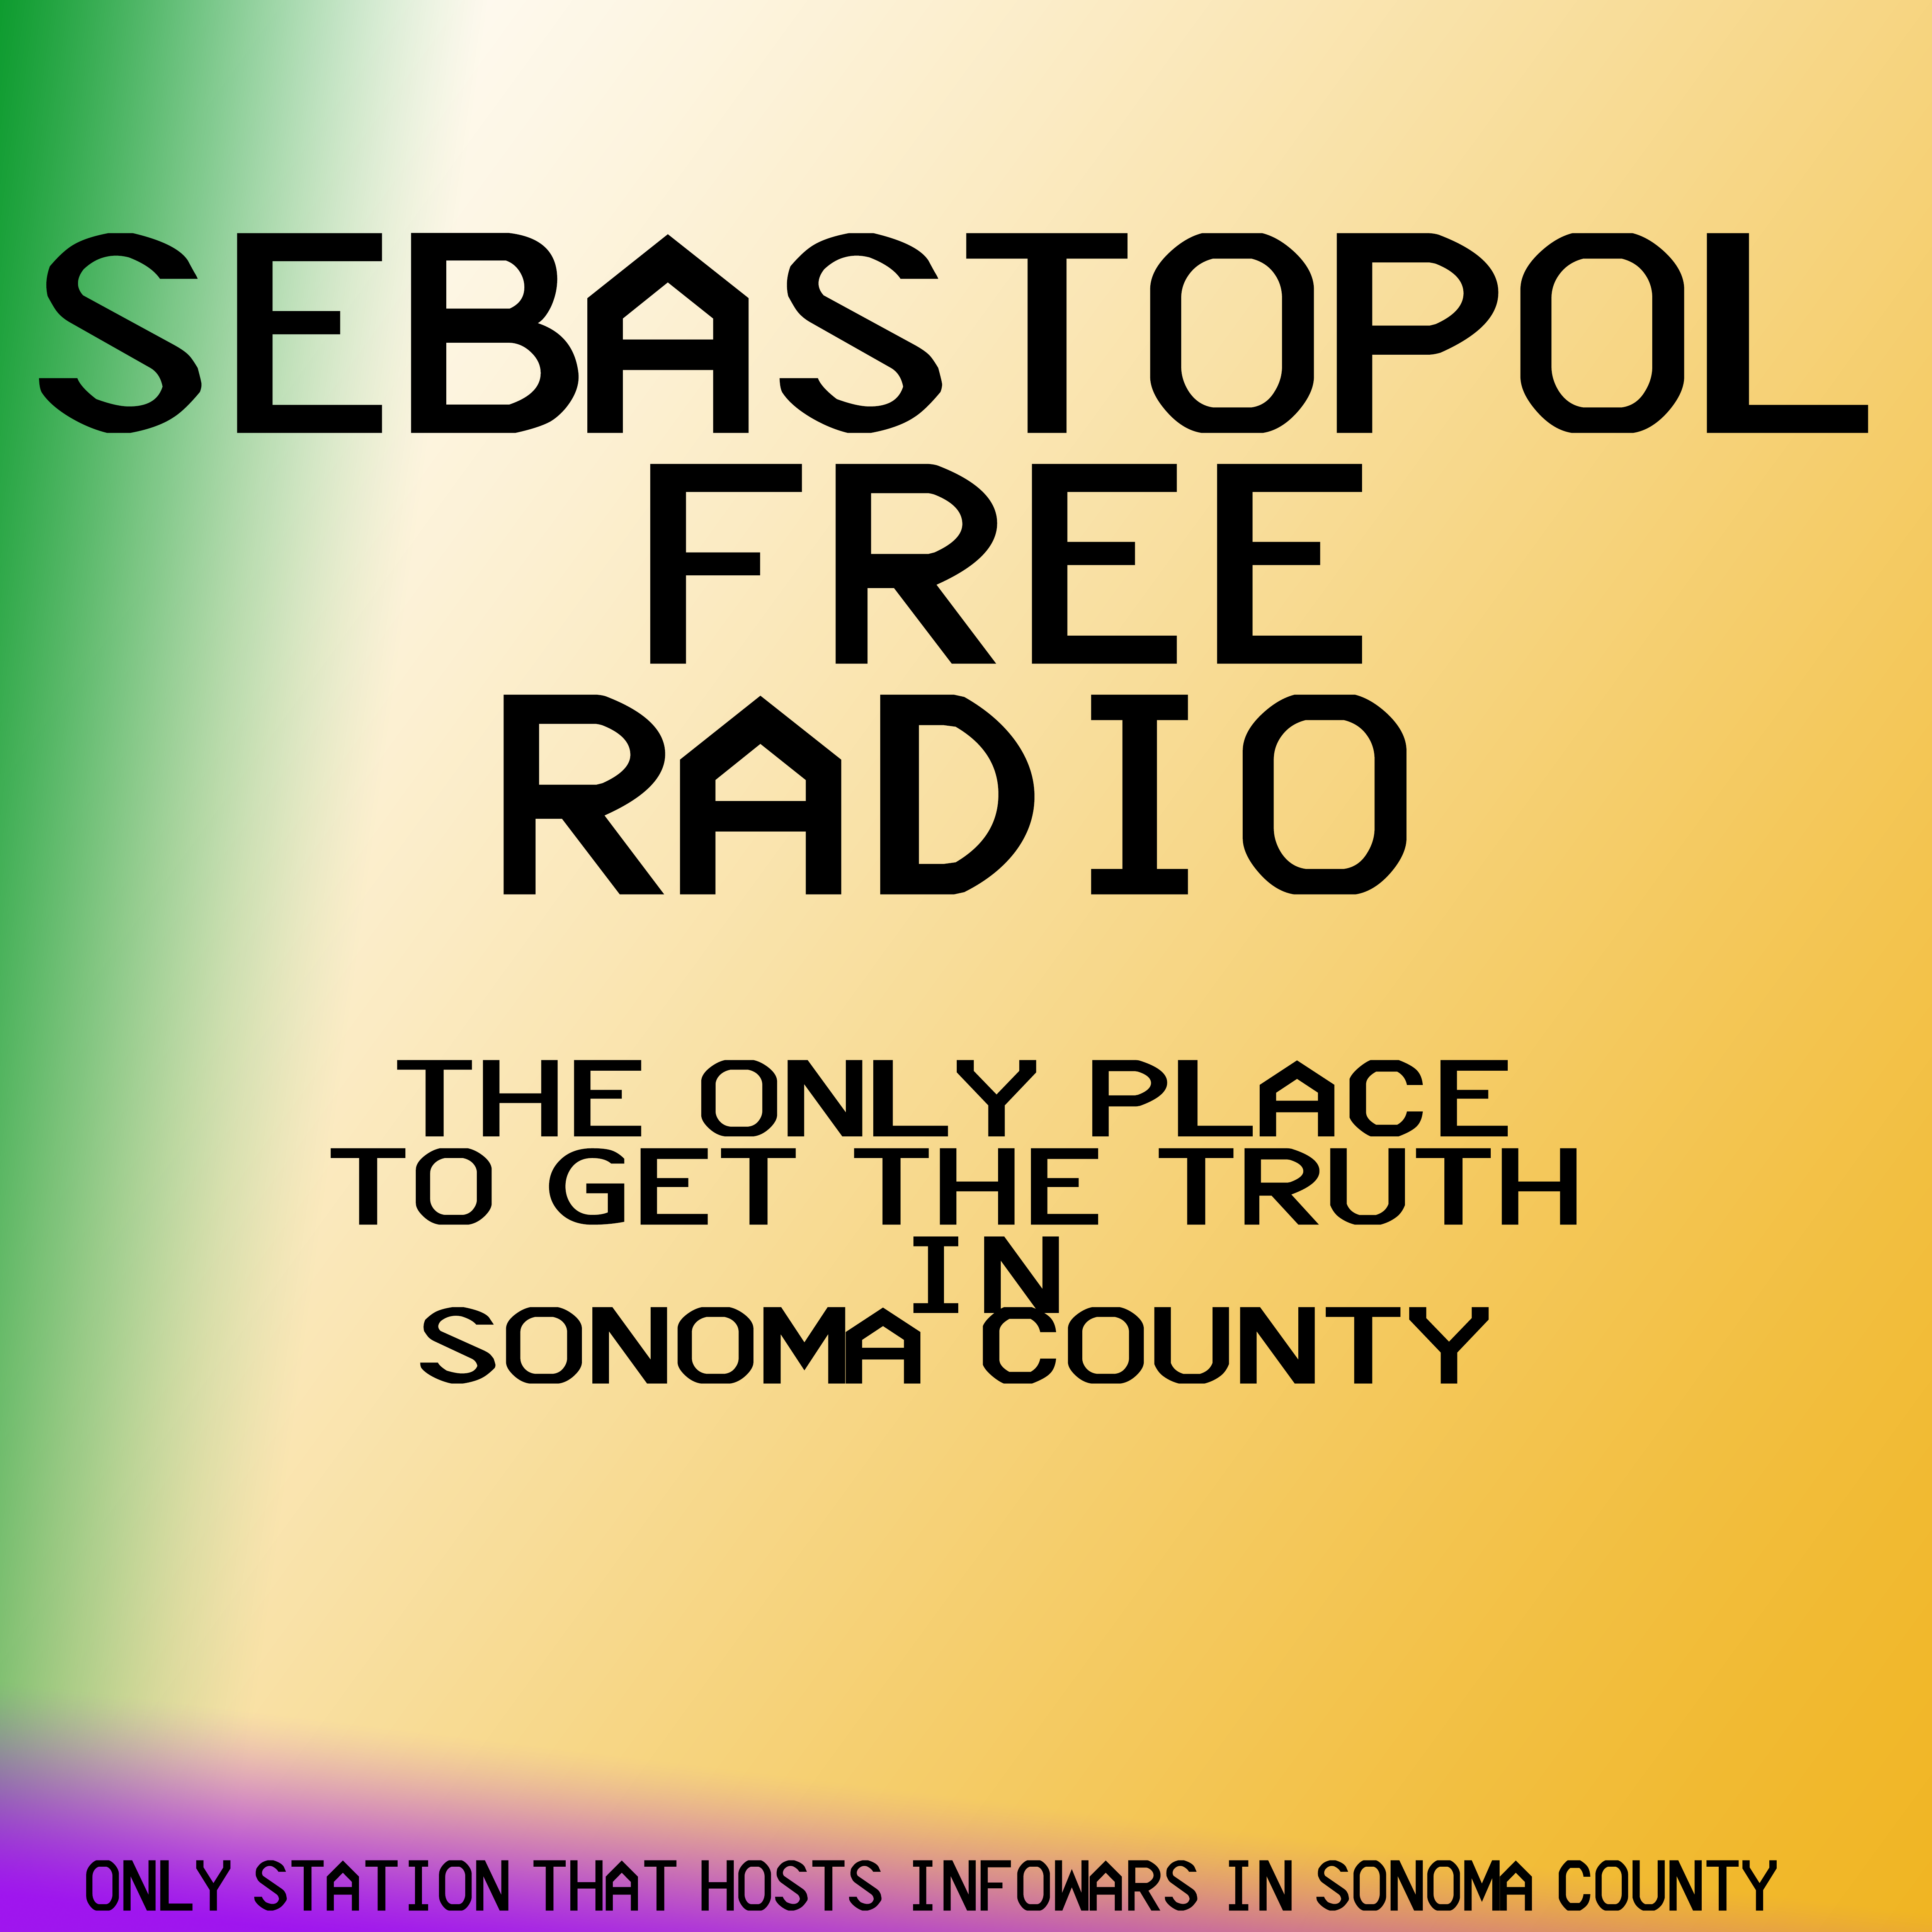 Sebastopol Free Radio